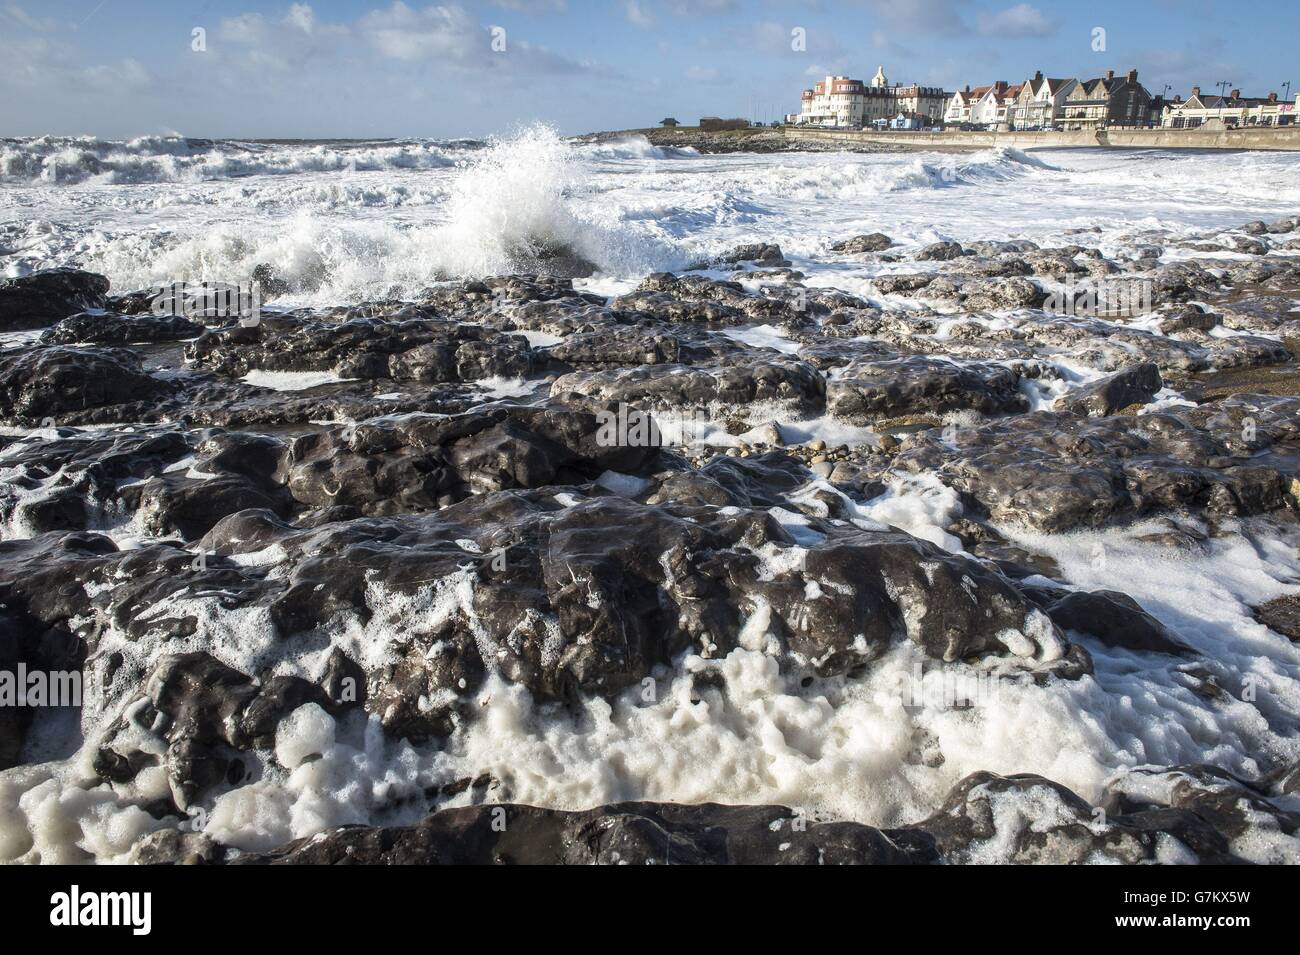 Wellen brechen und Schaum bläst um Felsen am Porthcawl Beach, Wales, wo der Wind mit härterem Wetter aufgeholt hat, da er für den Rest der Woche geschlossen wird. Stockfoto